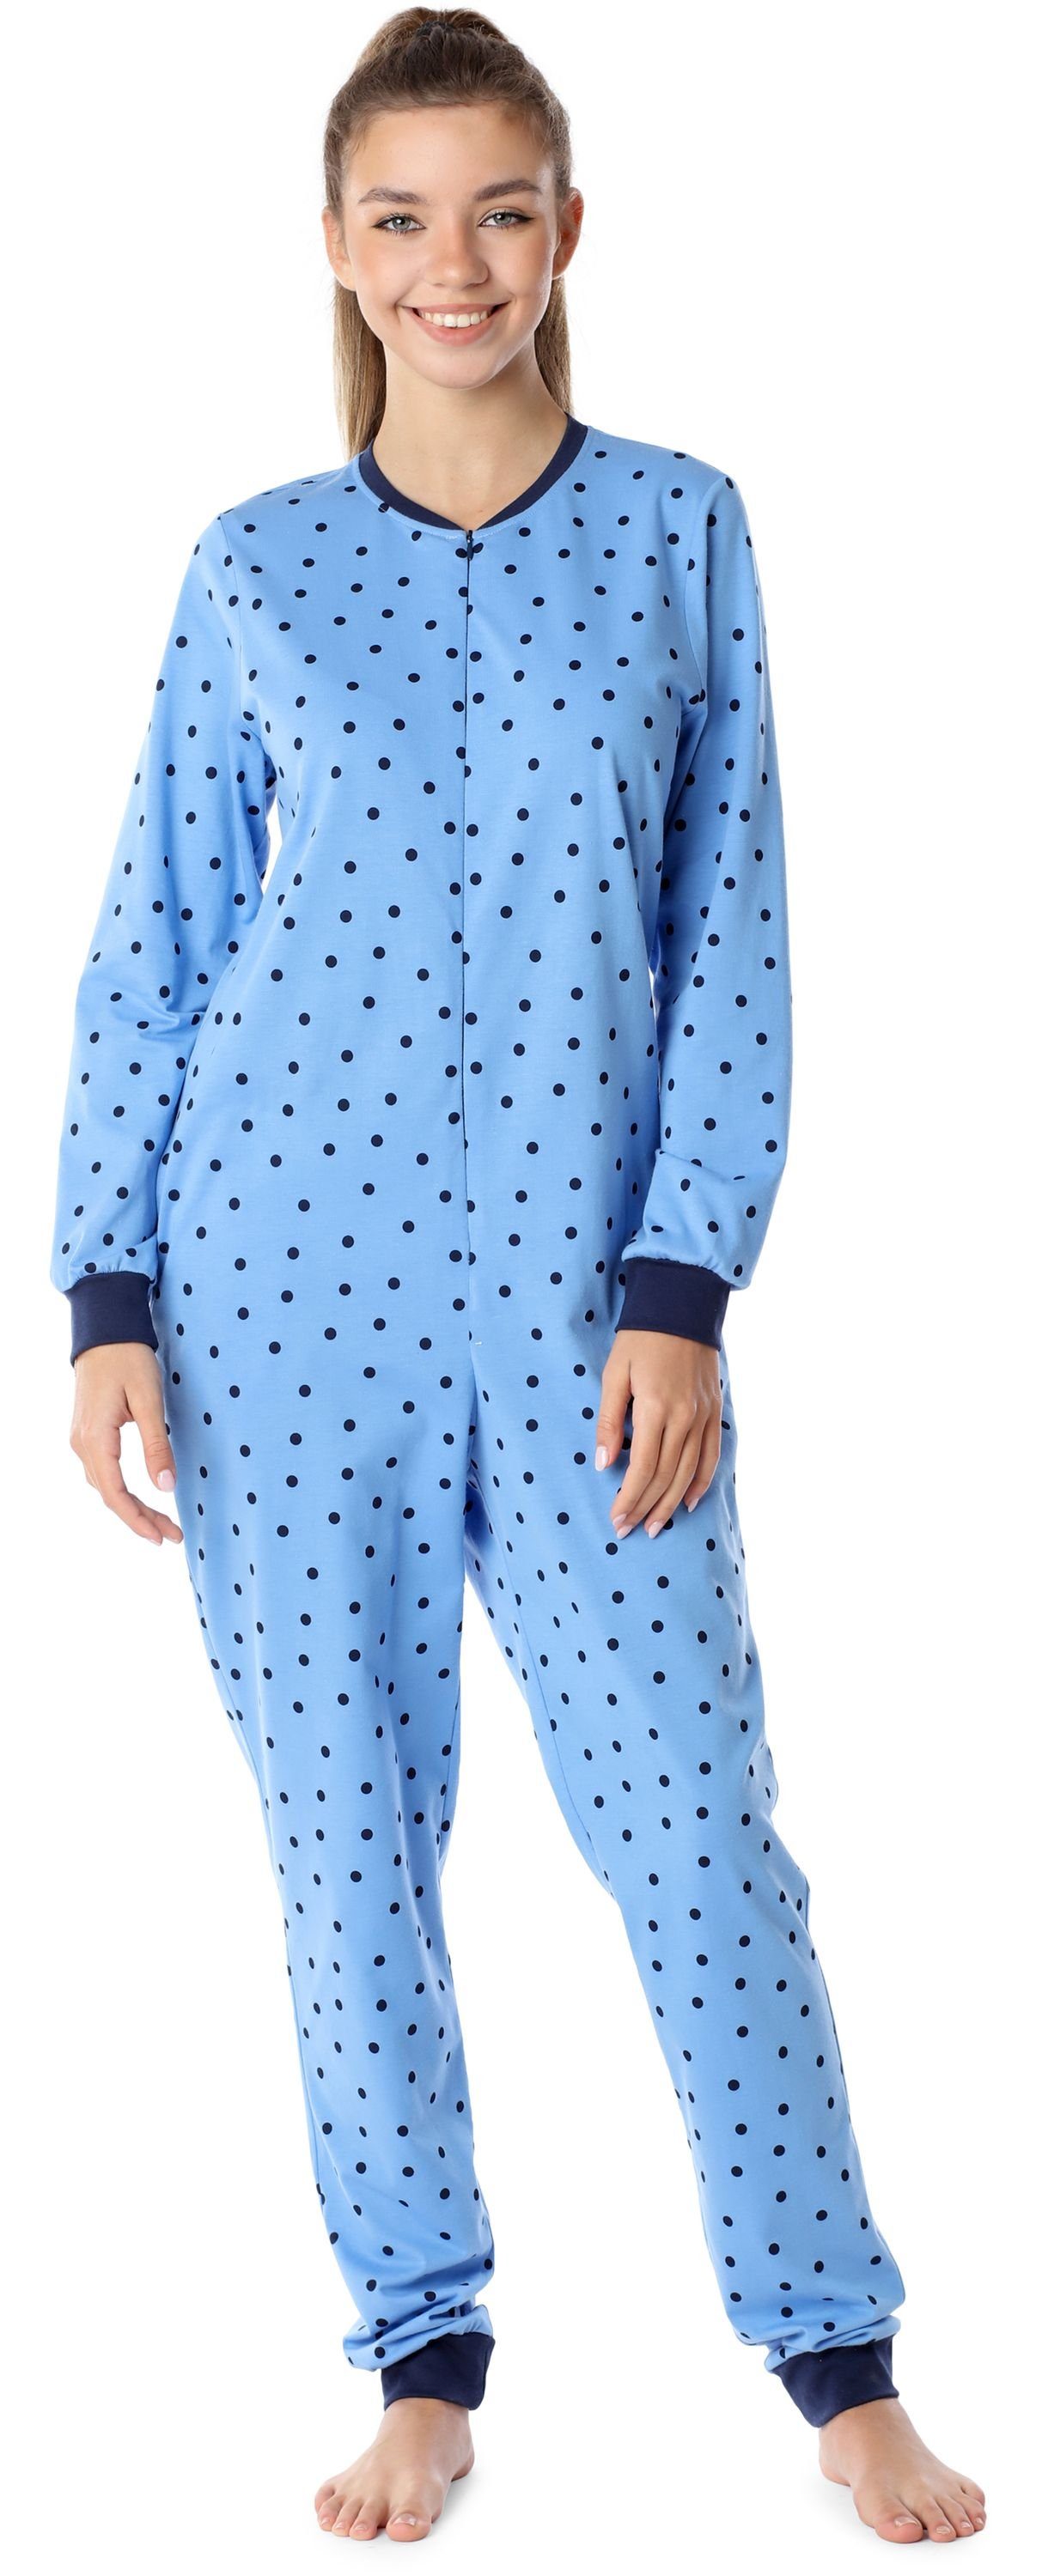 Blaue/Punkte Schlafanzug Merry Style MS10-235 Jugend Schlafanzug Schlafoverall Mädchen